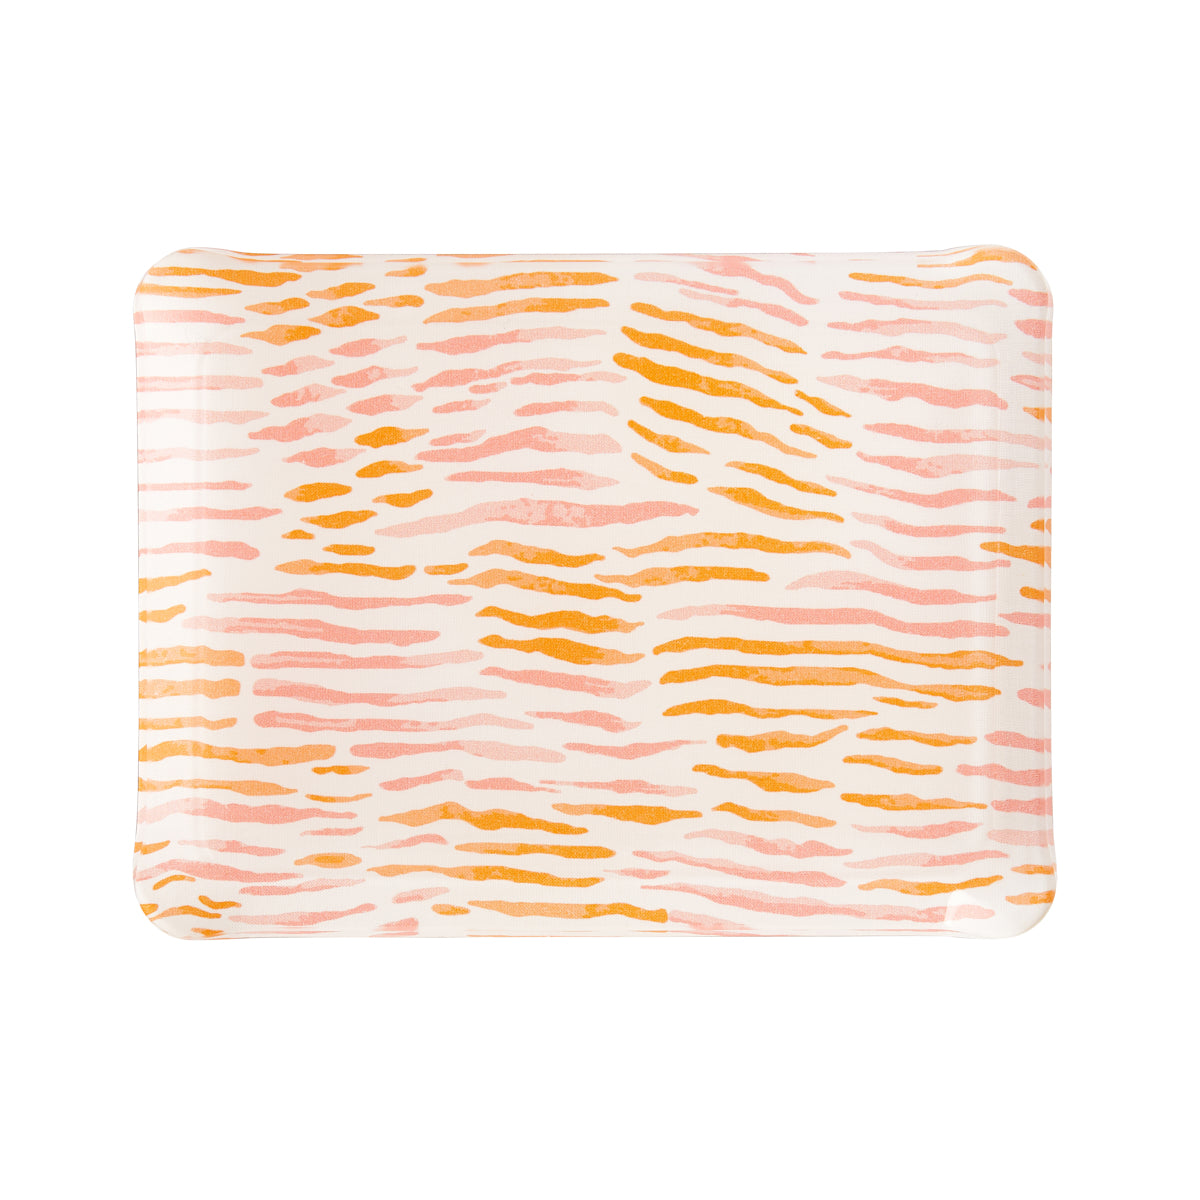 Nina Campbell Fabric Tray Small - Arles Pink/Orange